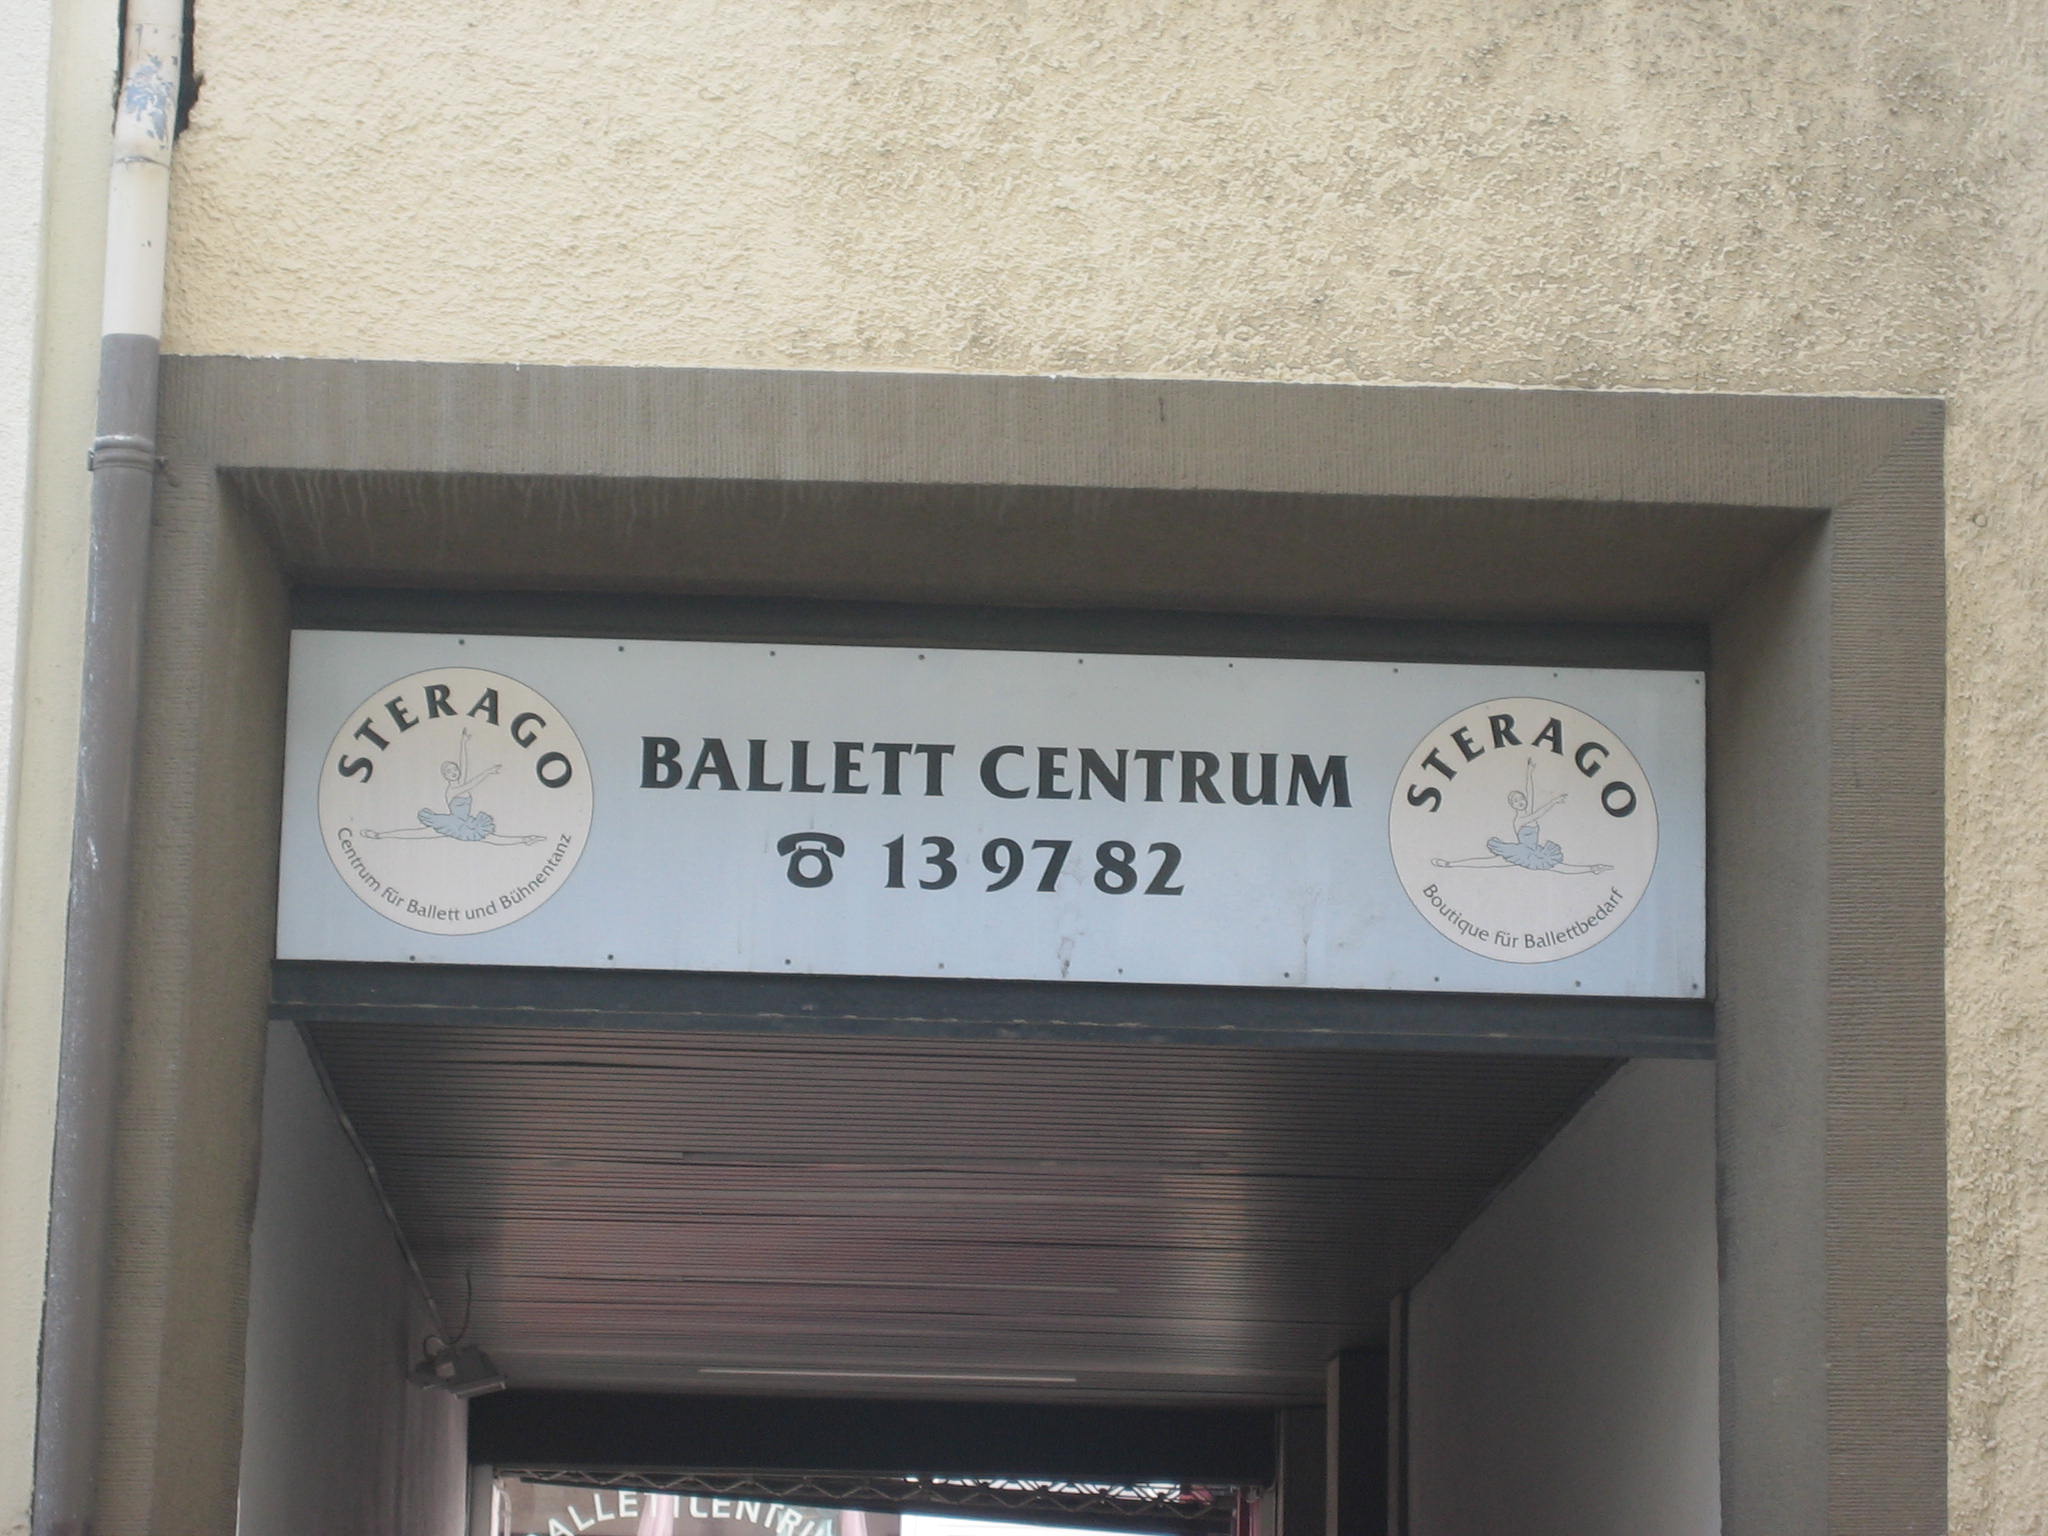 Bild 2 Ballettcentrum Sterago in Pforzheim